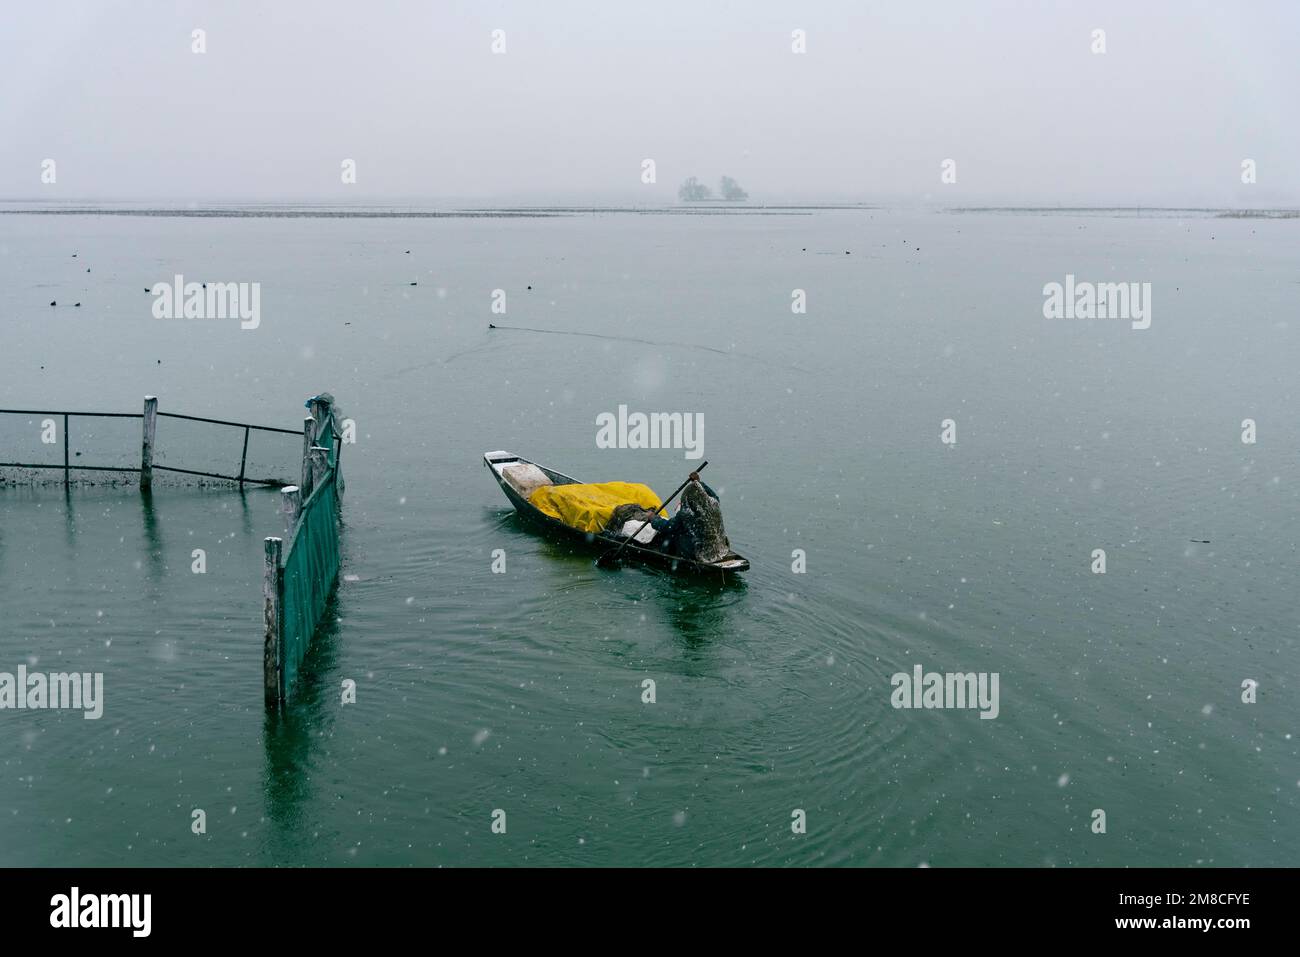 Un uomo rema la sua barca sul lago dal in mezzo a nevicate. Il Kashmir ha ricevuto nevicate fresche, con le cali più alte della valle che hanno ricevuto nevicate da moderate a pesanti e nevicate da leggere a moderate in pianura, causando una visibilità distruttiva. Questo ha influito sulle operazioni di volo insieme alla chiusura dell'autostrada nazionale Srinagar-Jammu. Foto Stock